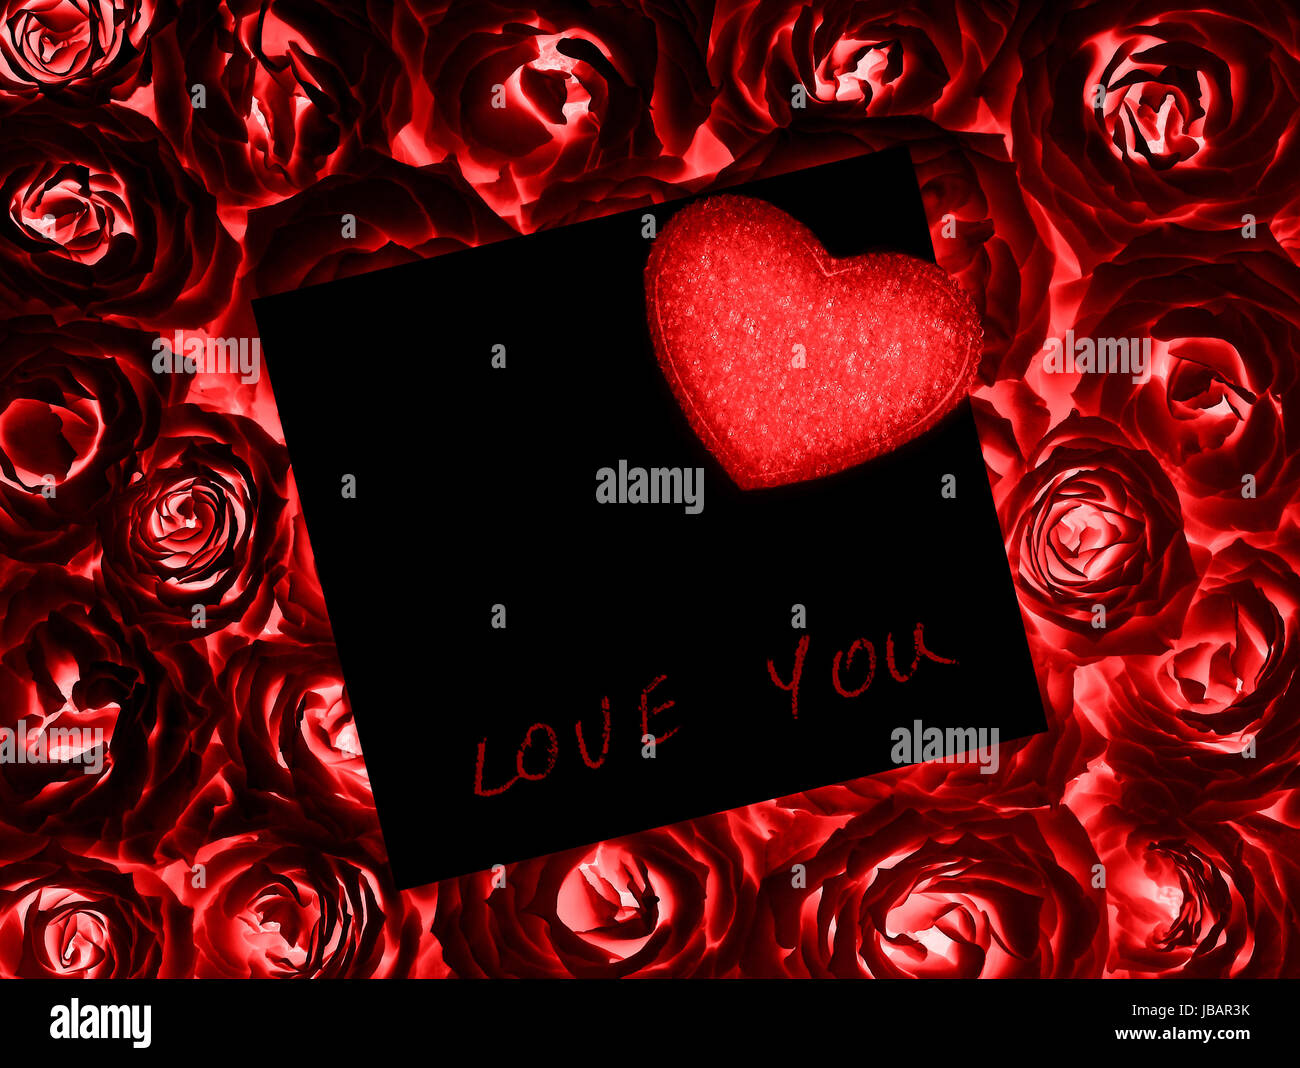 Schöne rote Rosen mit schwarzen Geschenk Karte & Herz Dekor, romantisches  Geschenk, Valentinstag, Liebe, Romantik und Leidenschaft Konzept  Stockfotografie - Alamy